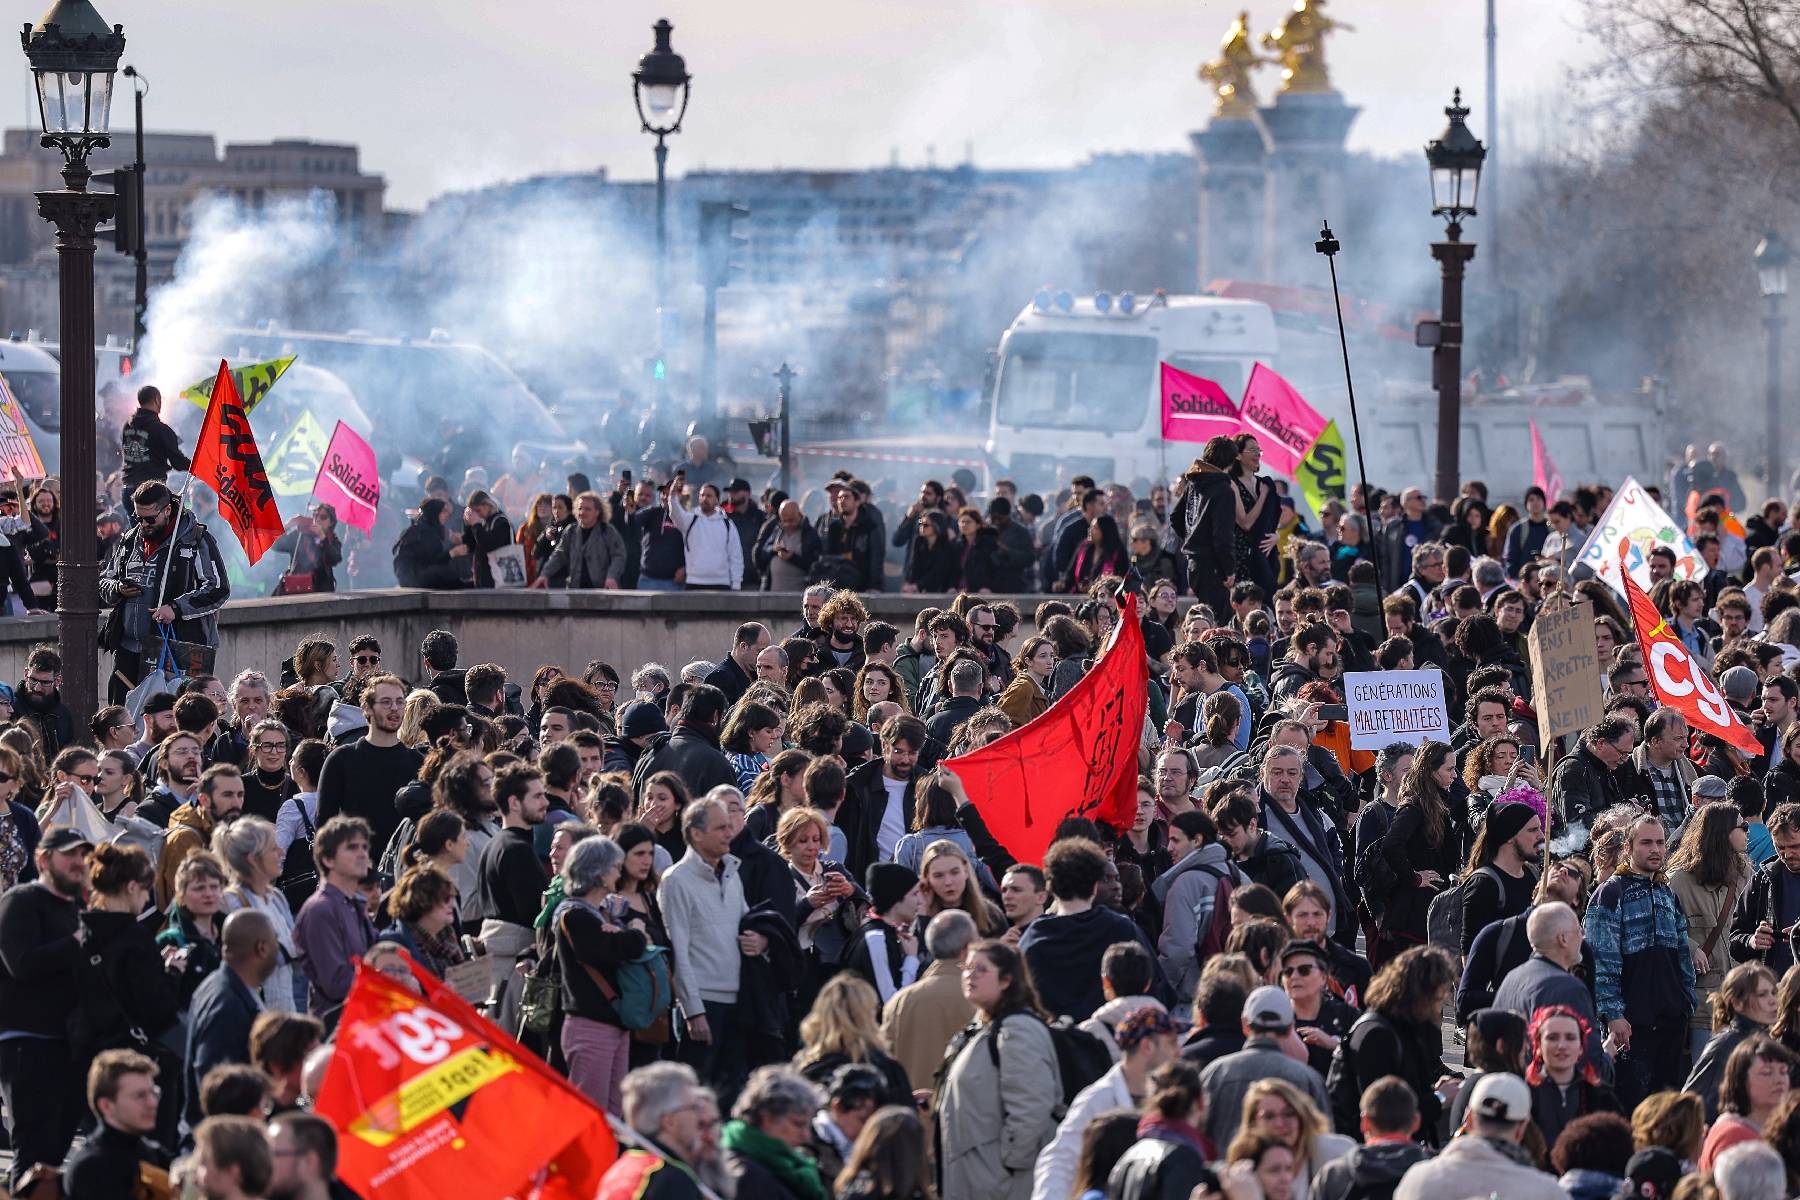 Retraites: plusieurs milliers de manifestants Place de la Concorde, rassemblements en France